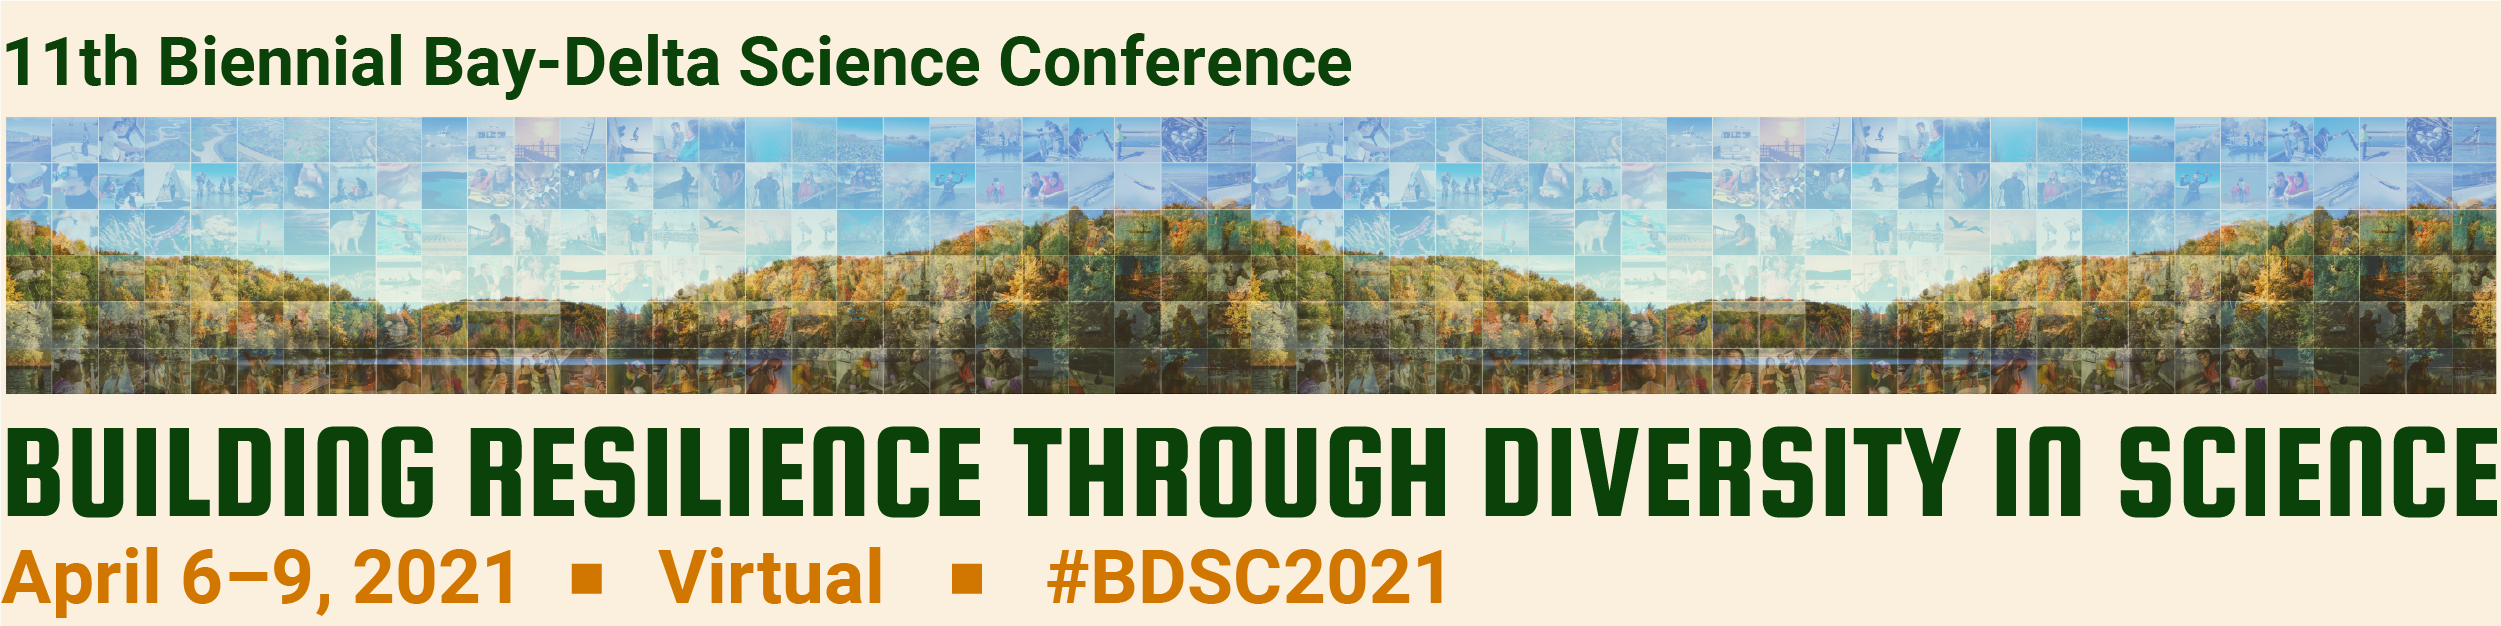 2021 Bay-Delta Science Conference.